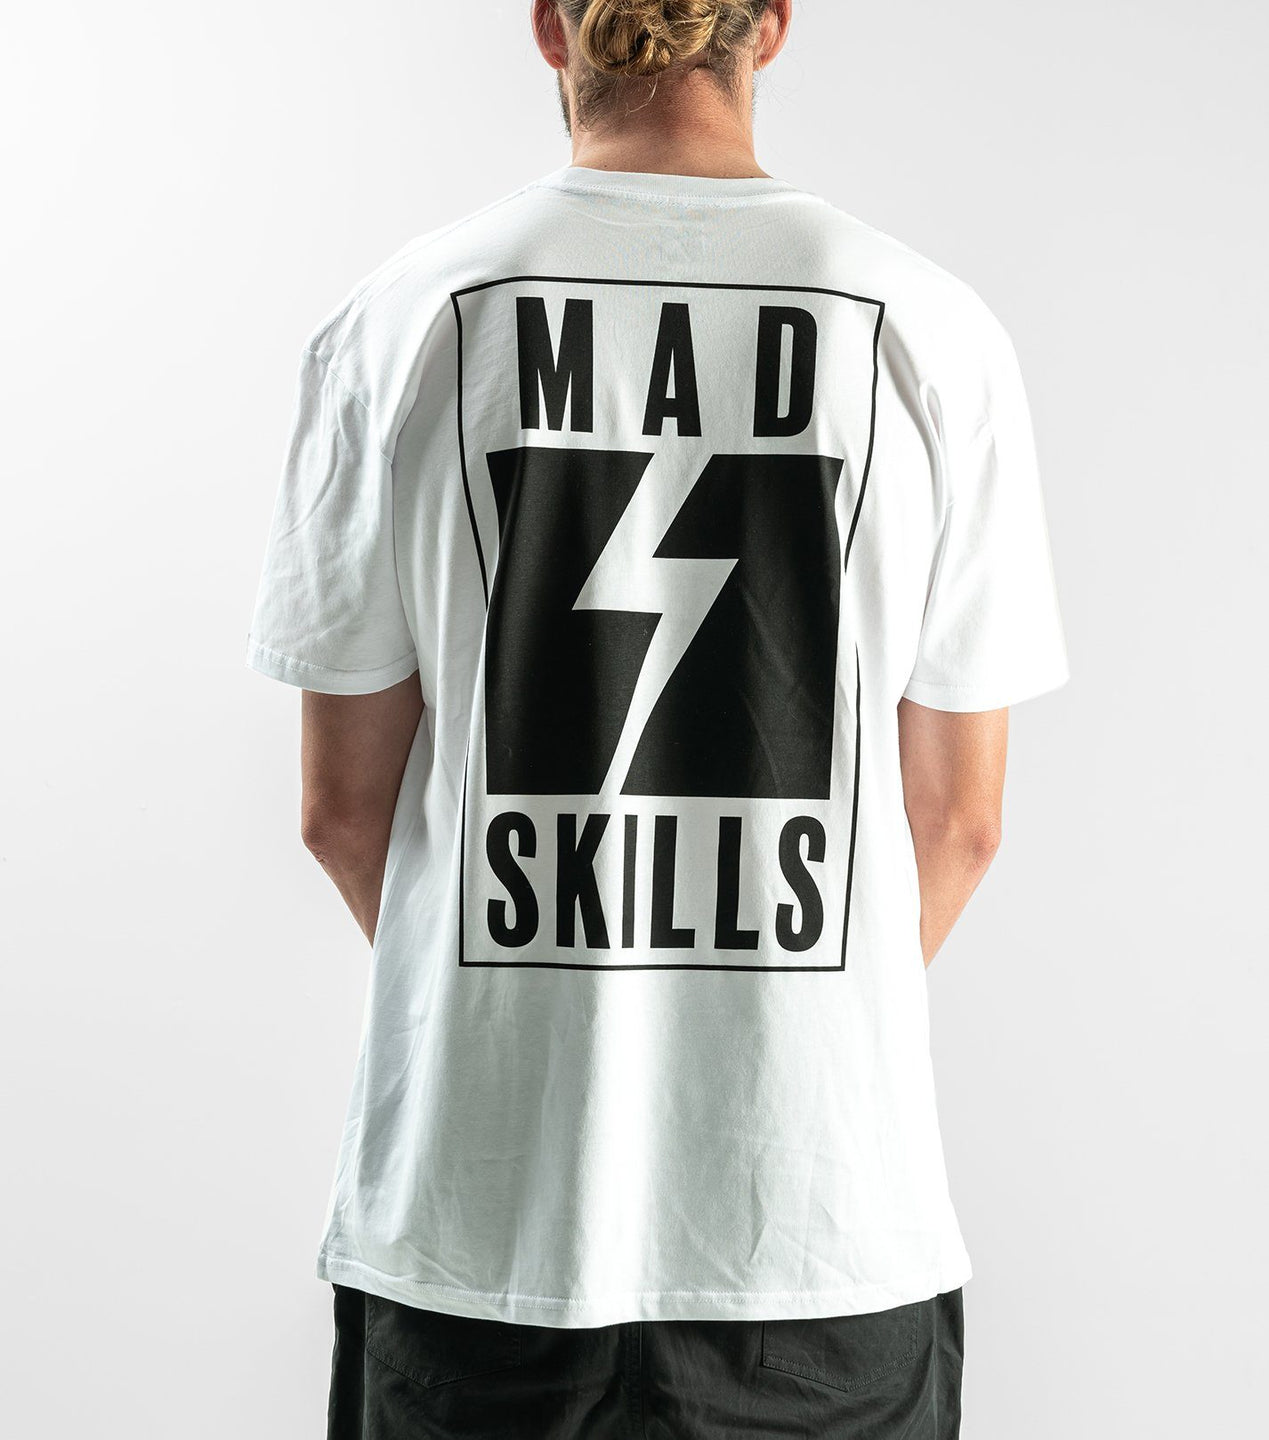 MAD SKILLS T-Shirt